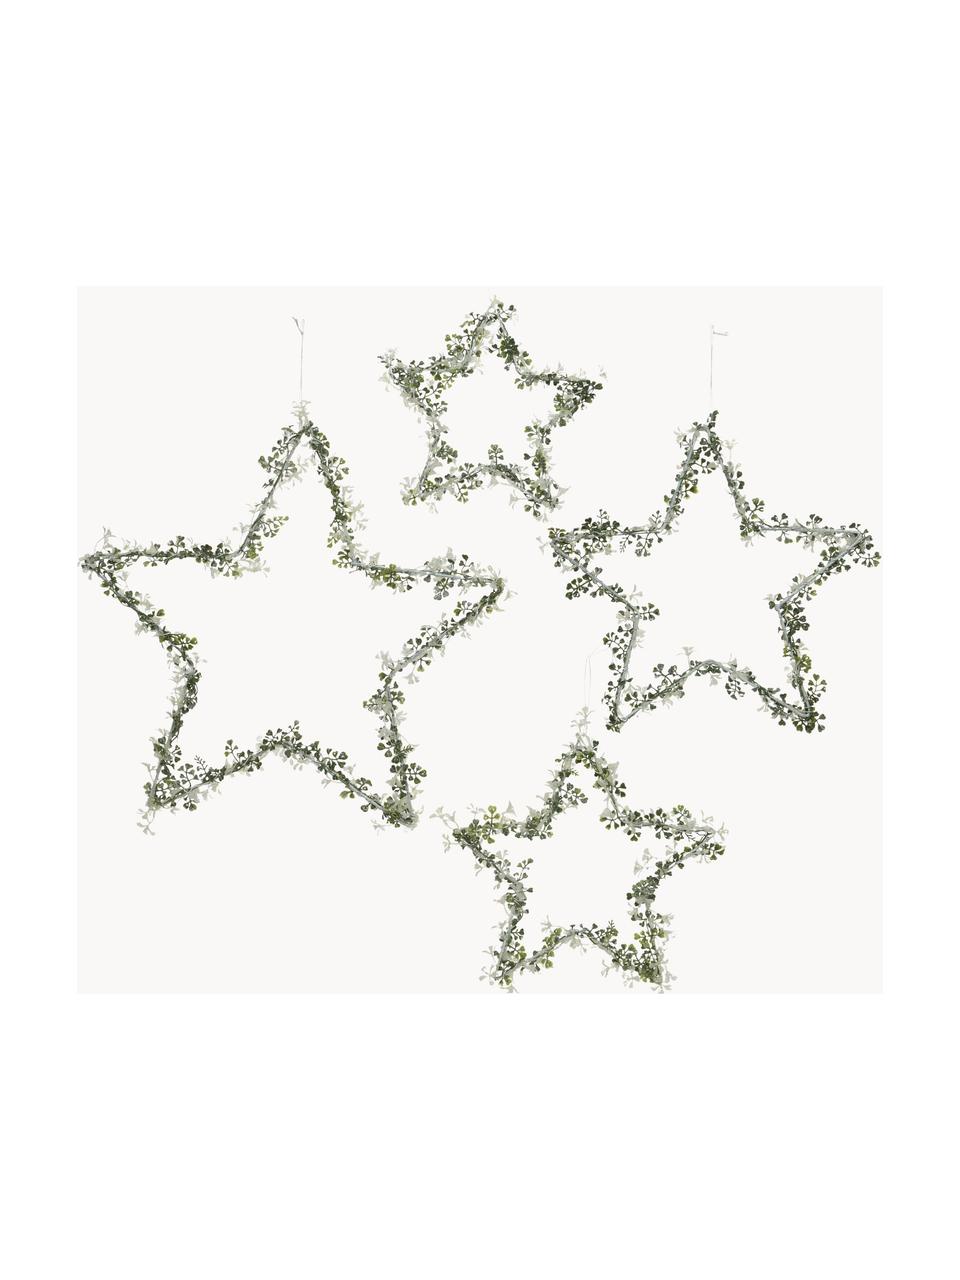 Deko-Sterne Starry in Grün, 4er-Set, Metall, Grüntöne, Set mit verschiedenen Grössen